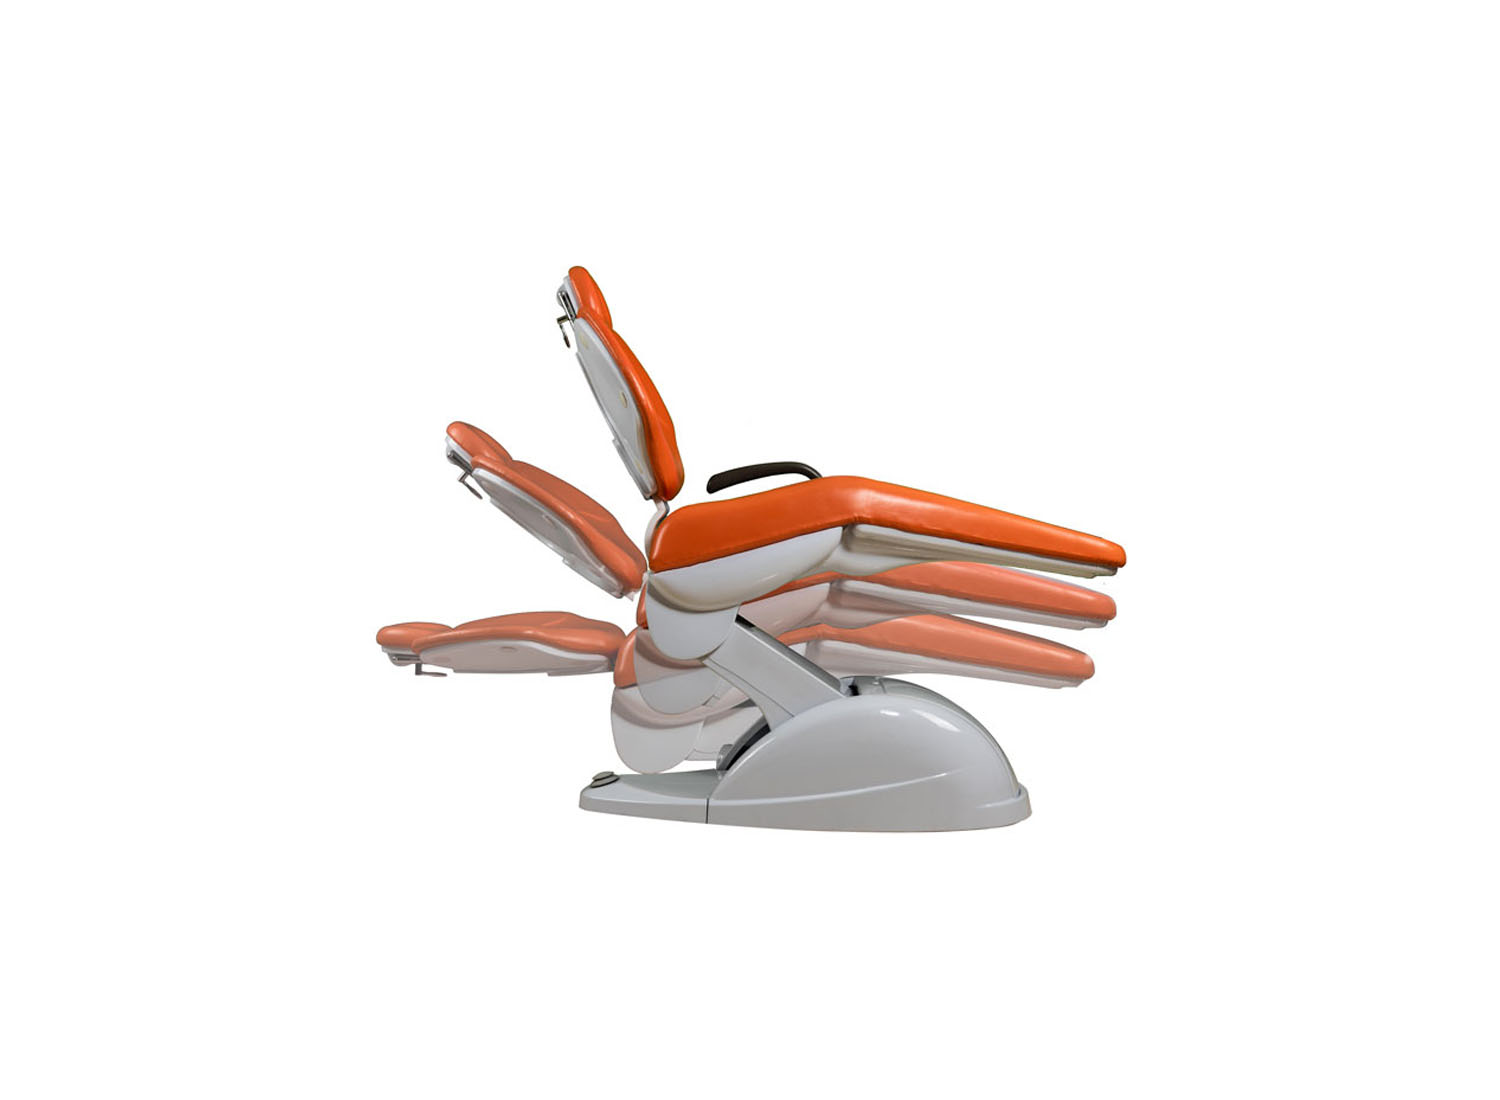 یونیت و صندلی مدل پرستو FX 1020 P 405 S برند فراز مهر اصفهان